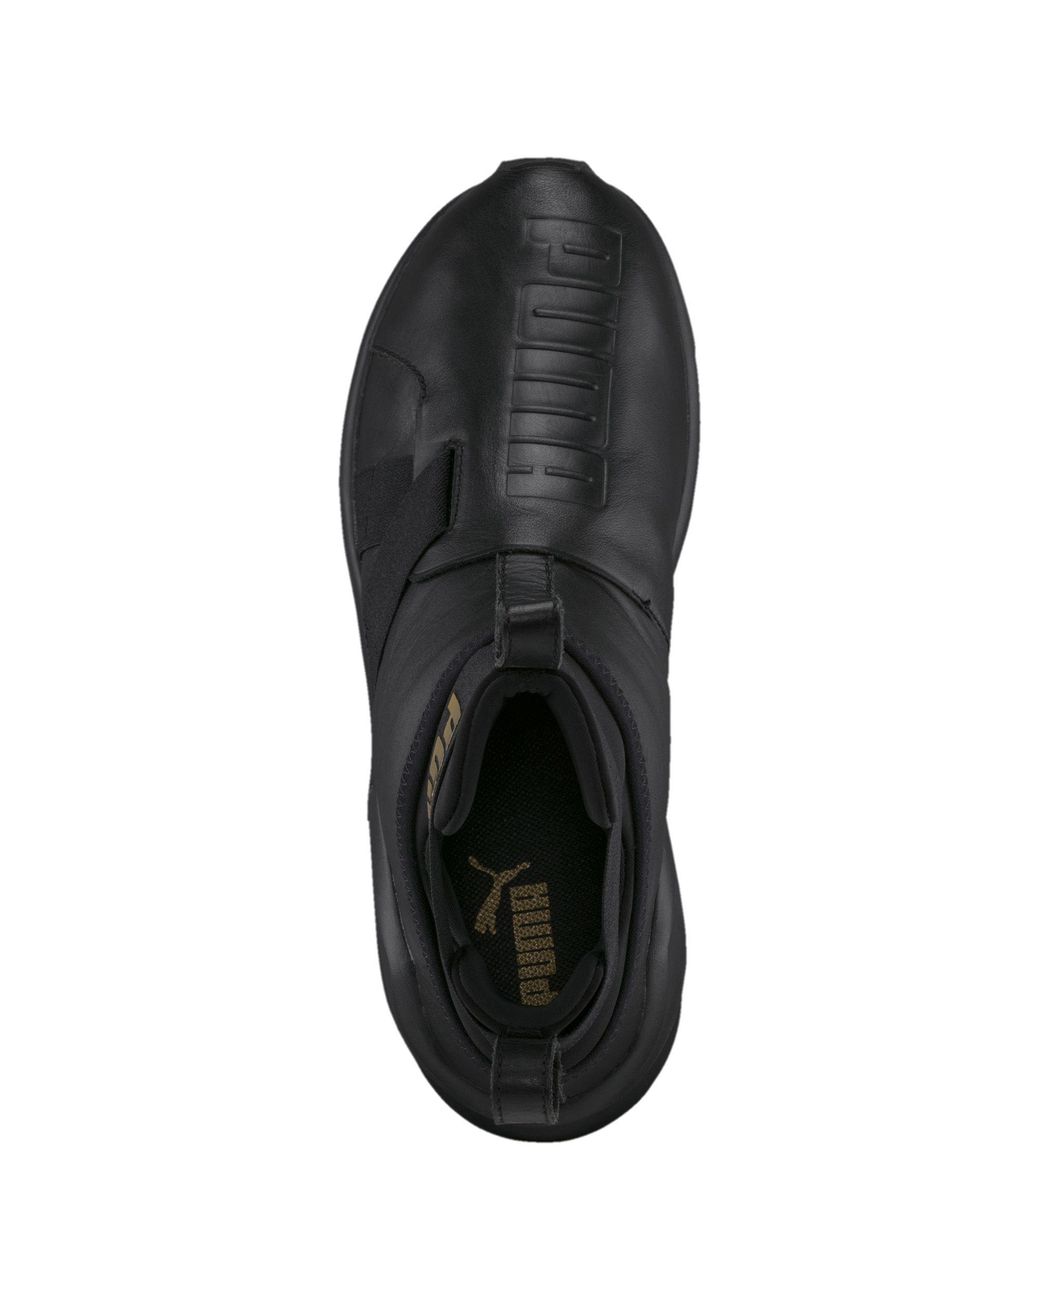 PUMA Fierce Strap Leather Women's Training Shoes in Black | Lyst